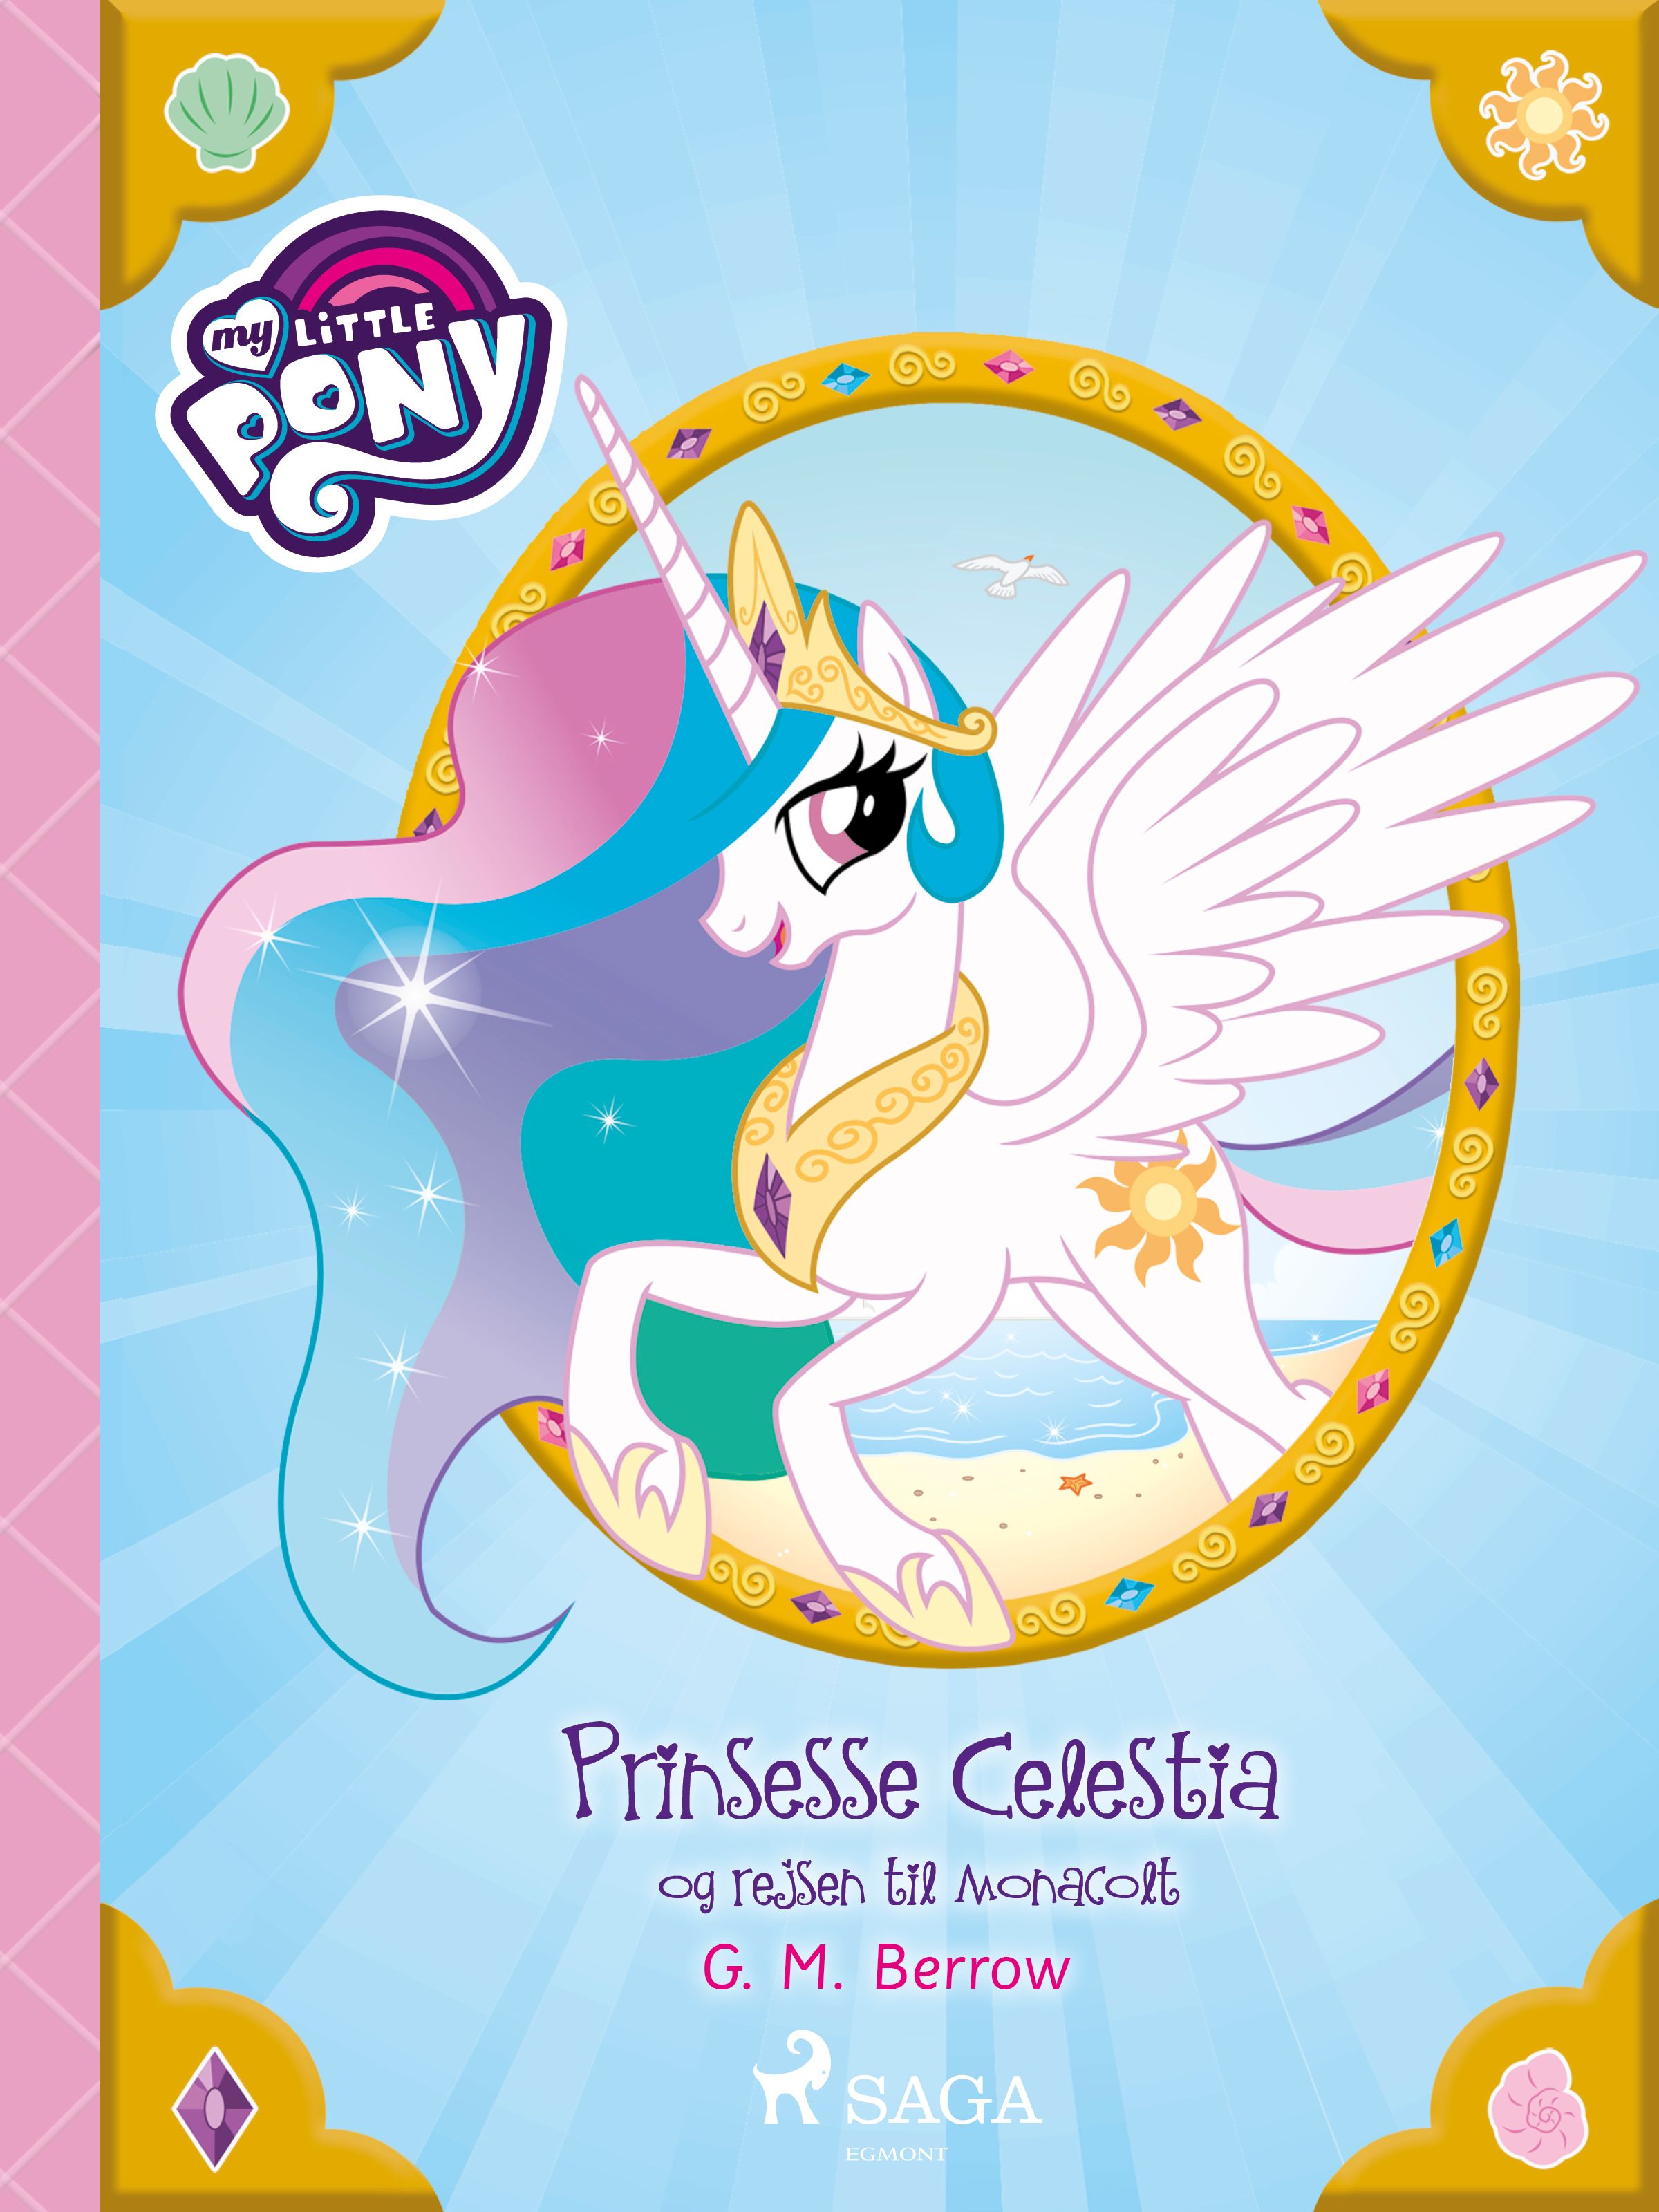 My Little Pony - Prinsesse Celestia og rejsen til Monacolt, e-bok av G. M. Berrow